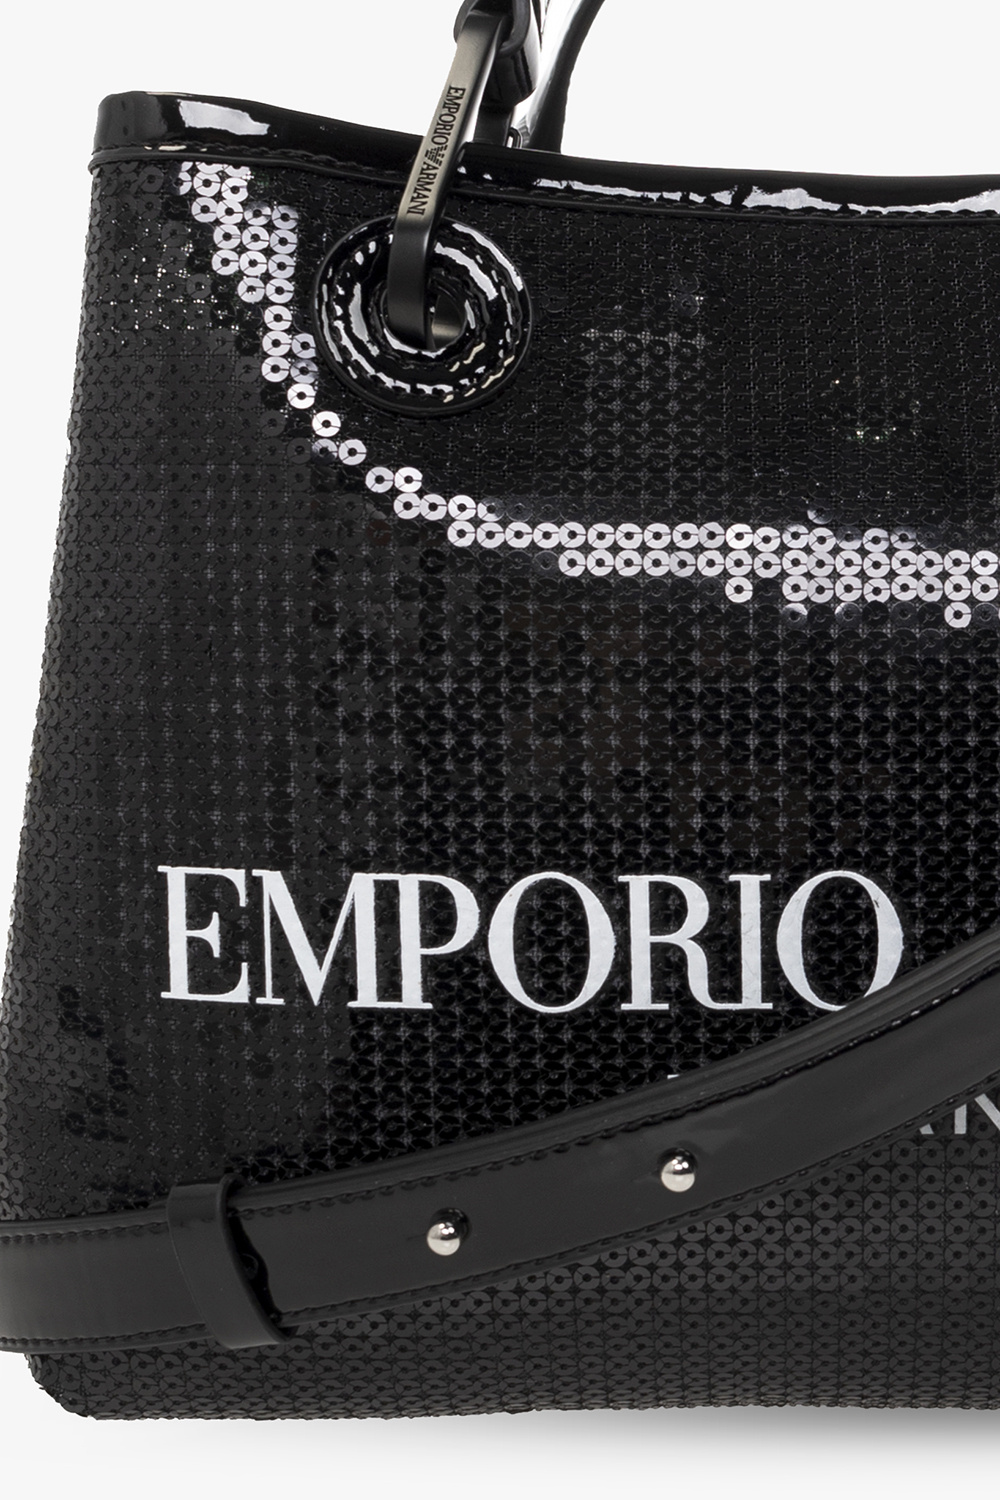 Emporio Armani Myea Black Mini Shopping Bag